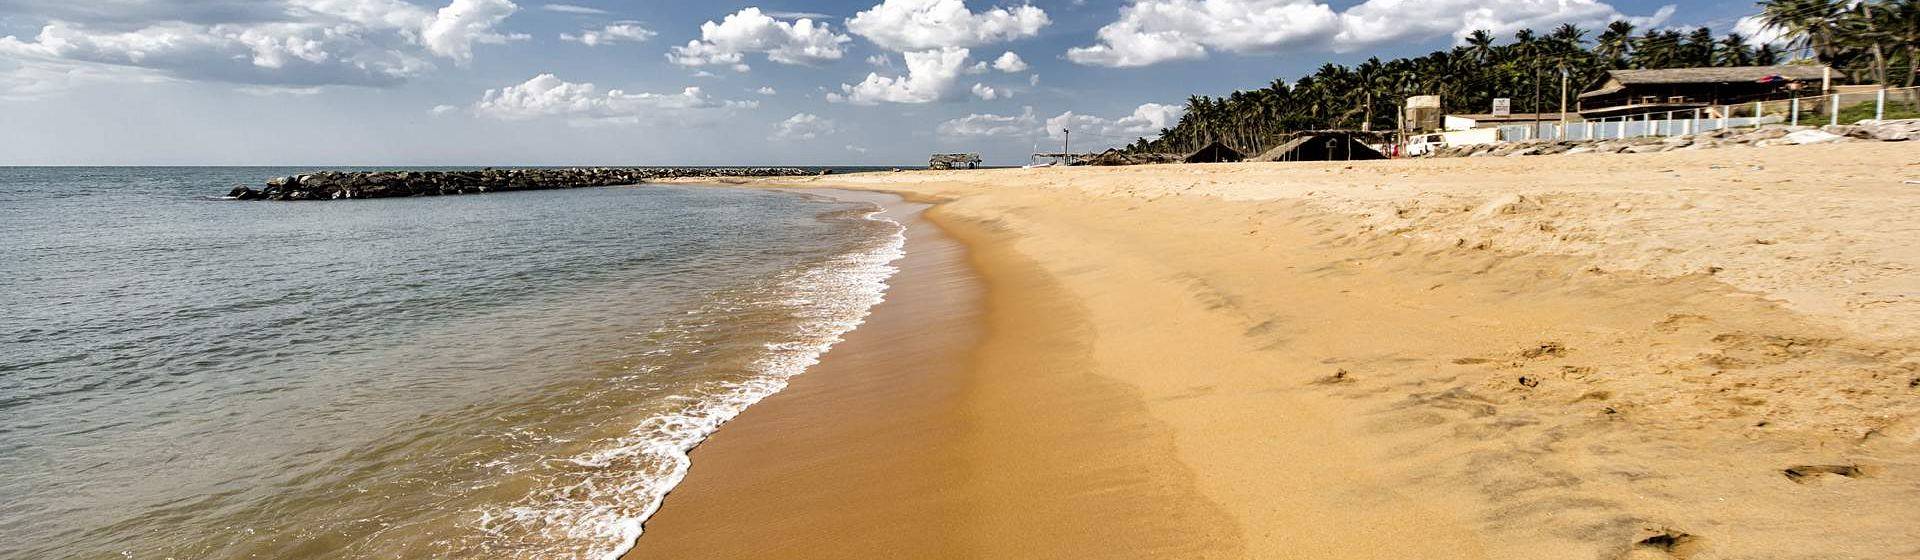 Holidays to Negombo Image